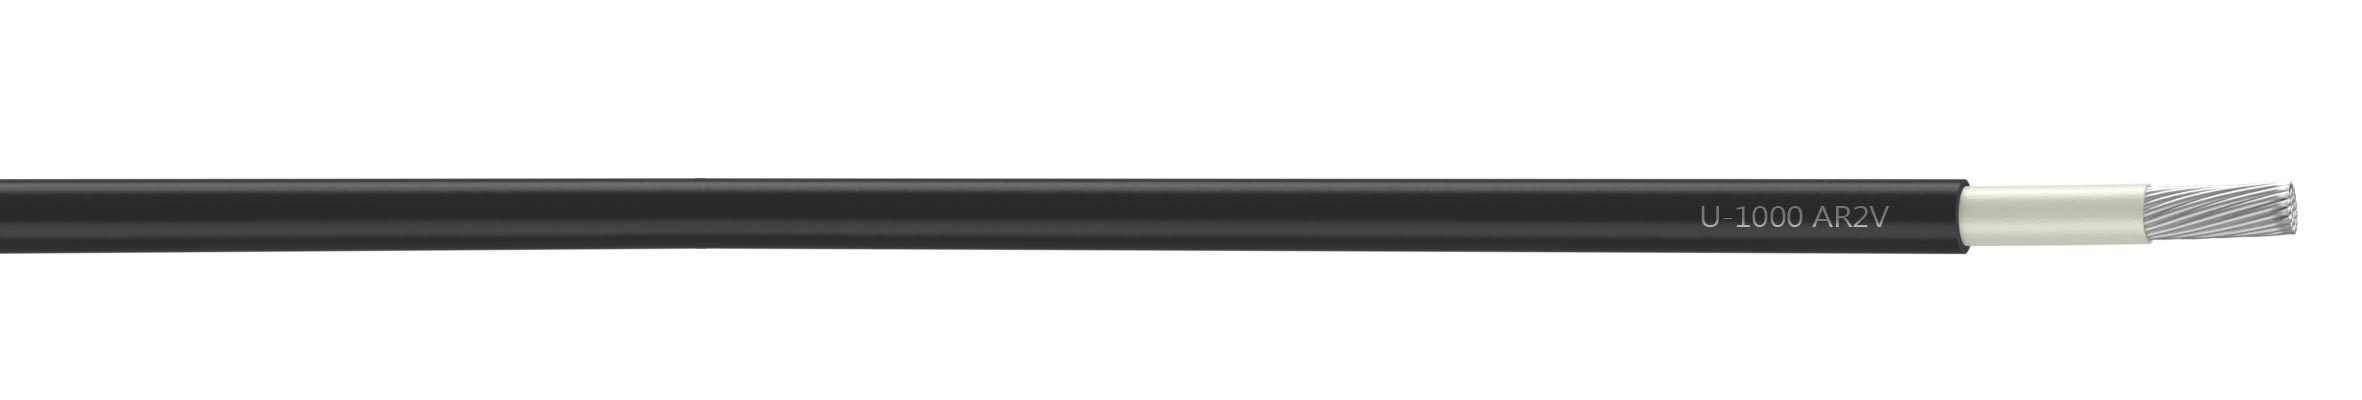 Nexans - Câble rigide U-1000 AR2V aluminium 1x95 longueur à la coupe